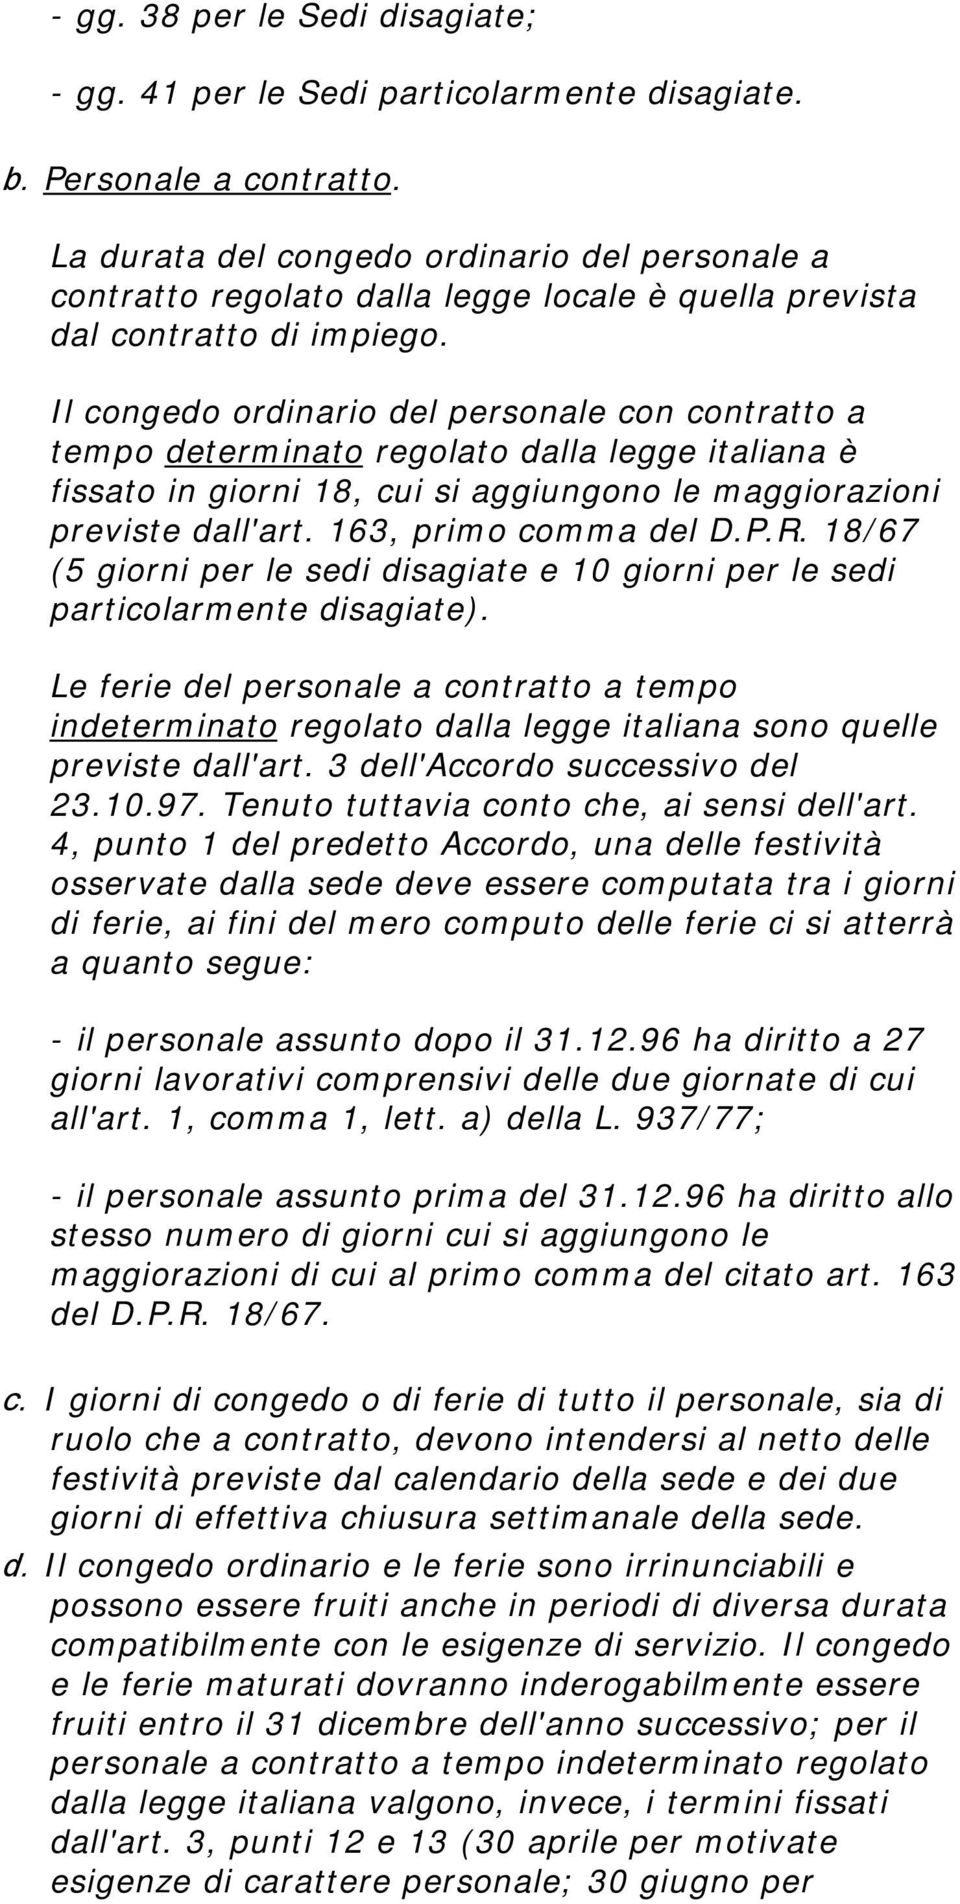 Il congedo ordinario del personale con contratto a tempo determinato regolato dalla legge italiana è fissato in giorni 18, cui si aggiungono le maggiorazioni previste dall'art. 163, primo comma del D.